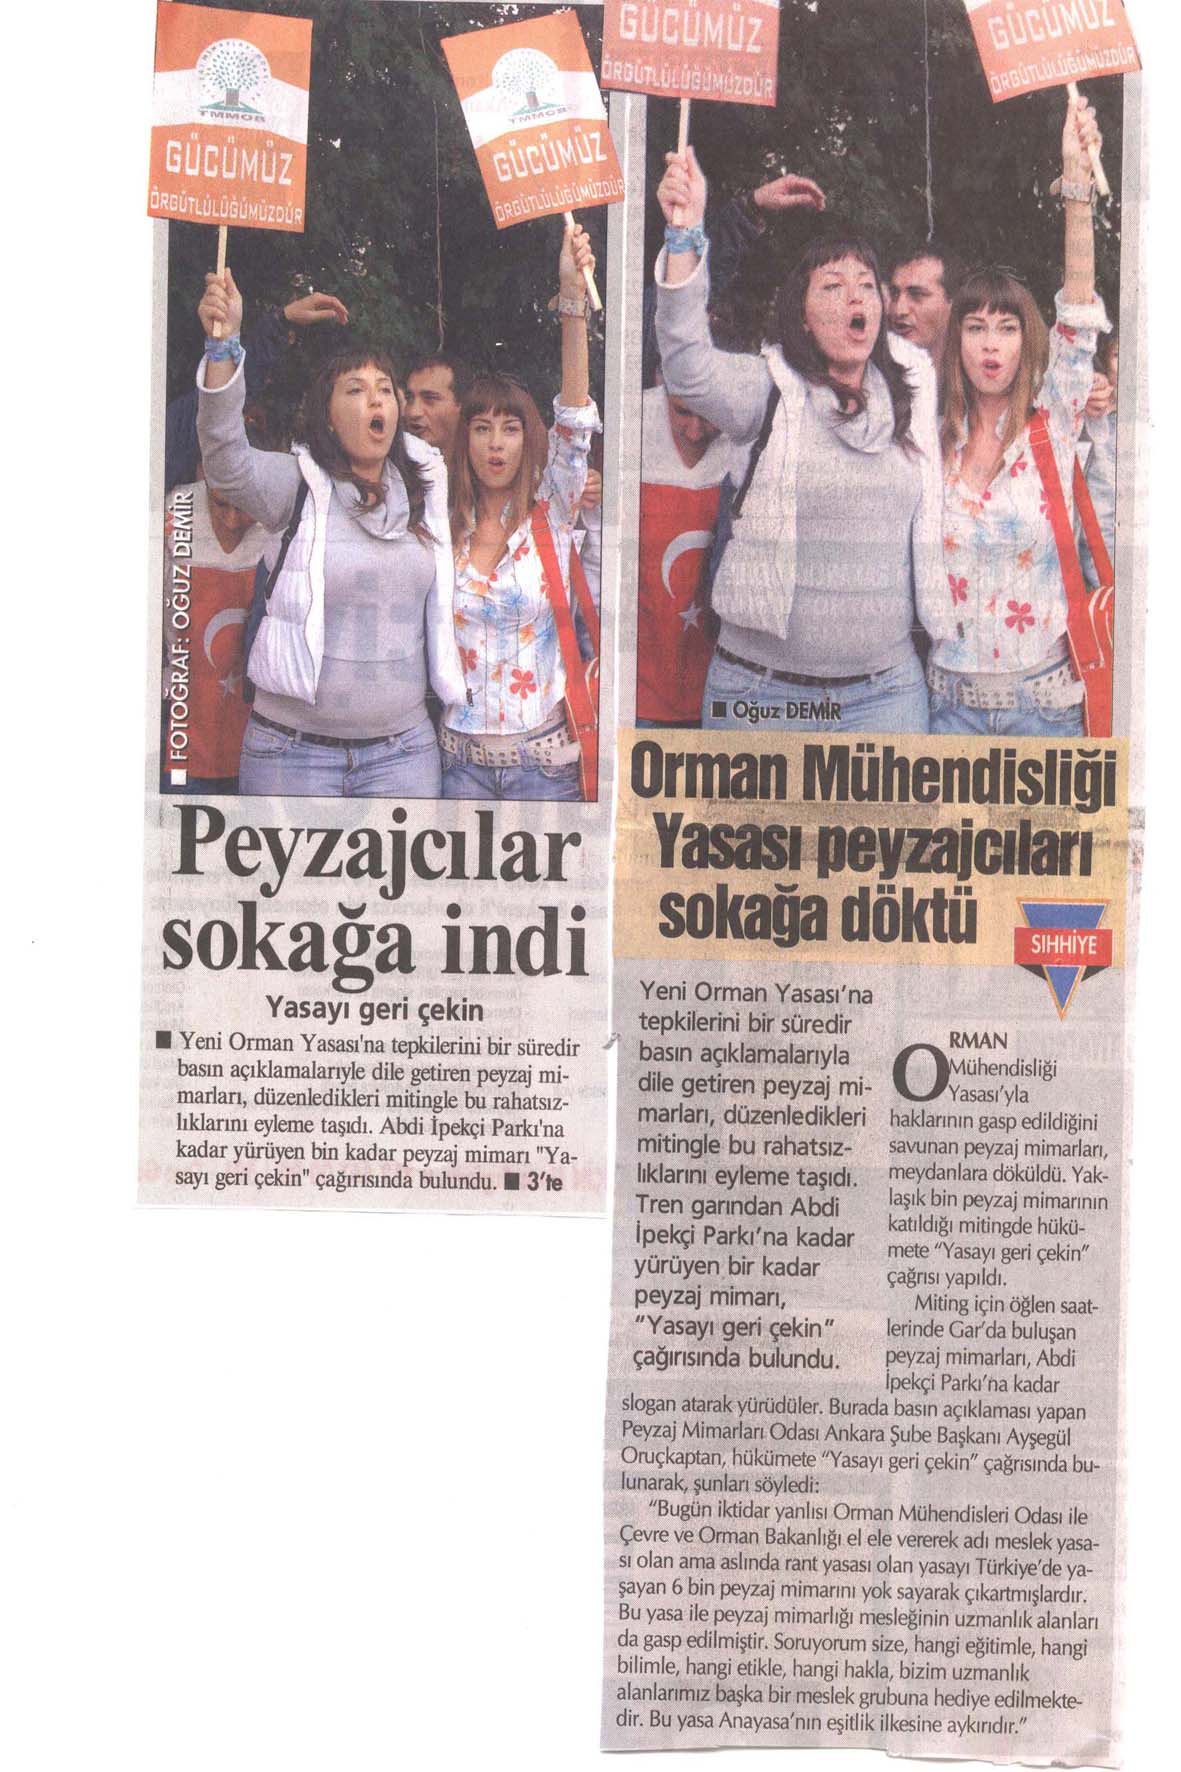 ORMAN MÜHENDİSLERİ YASASI PEYZAJCILARI SOKAĞA DÖKTÜ
HÜRRİYET-ANKARA 02.10.2006